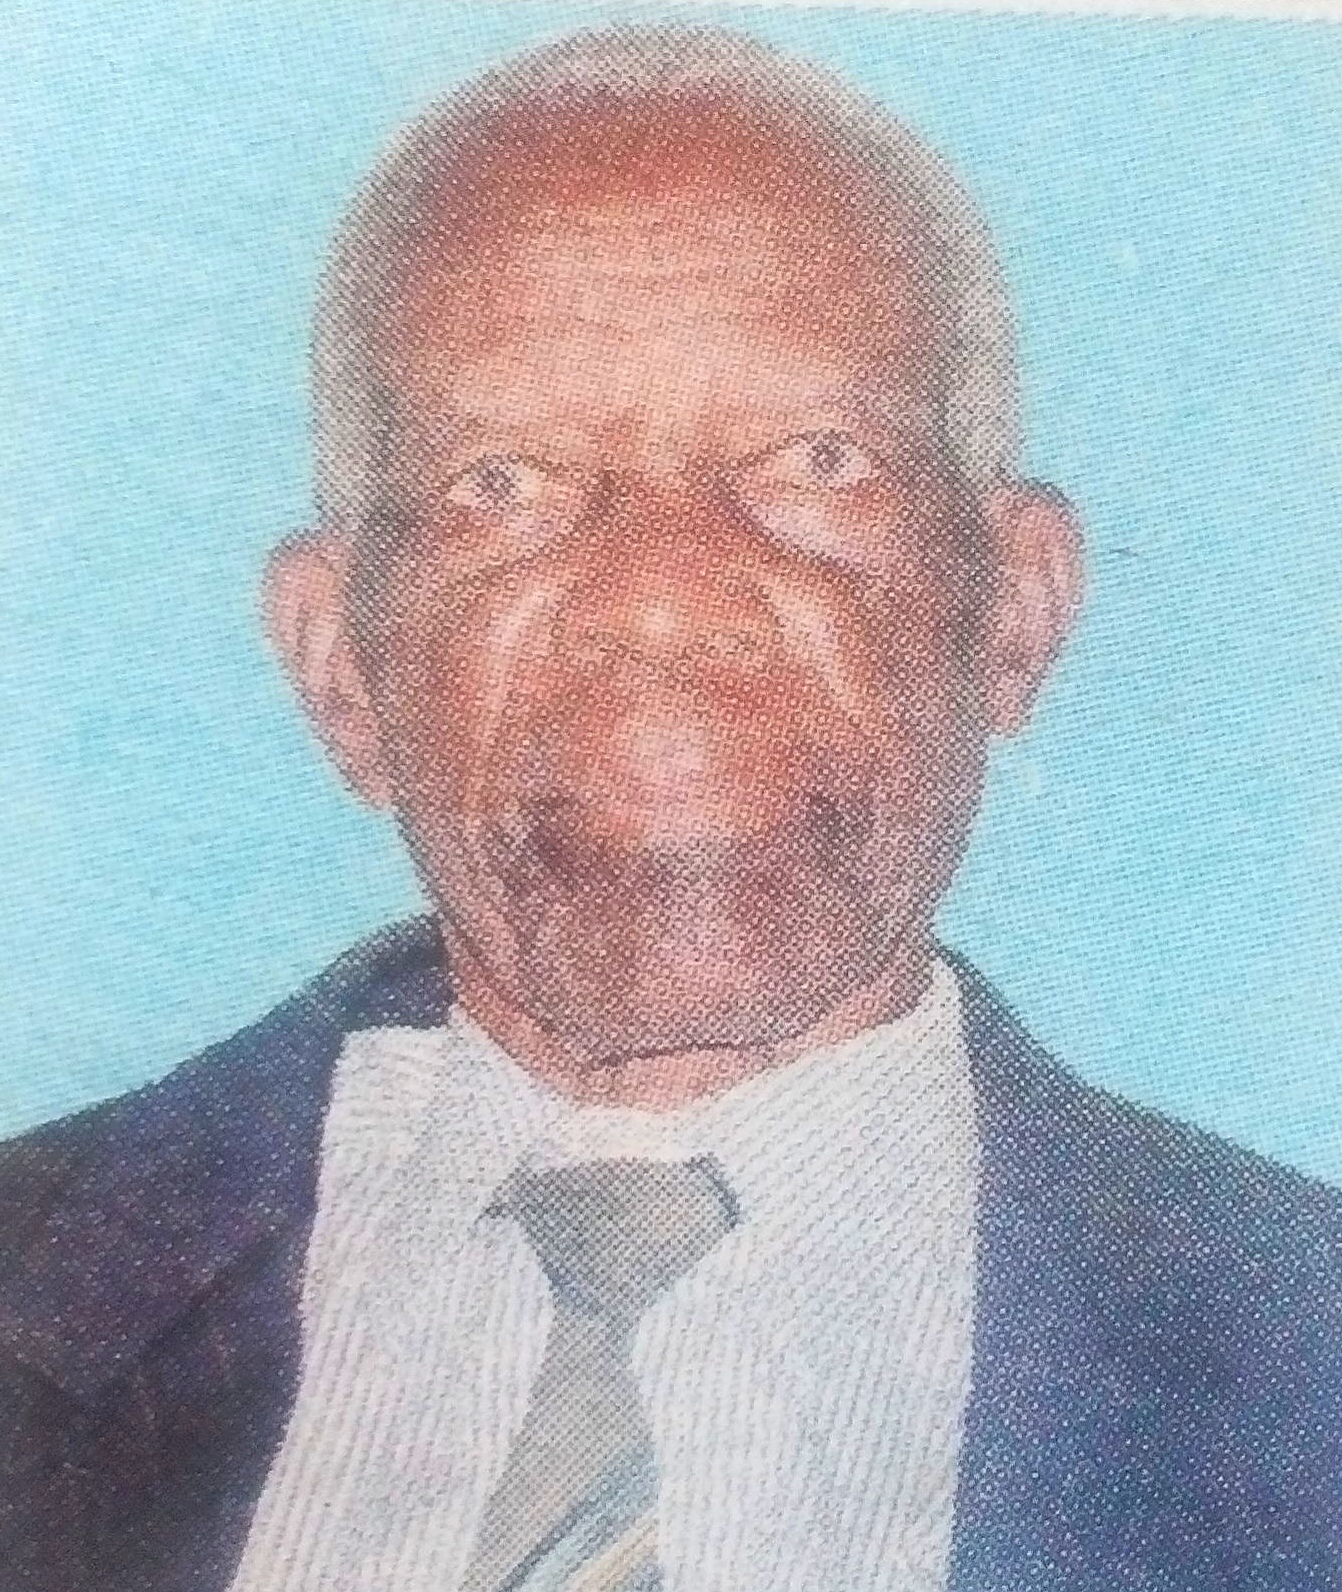 Obituary Image of Amraphael Mlamba Maganga